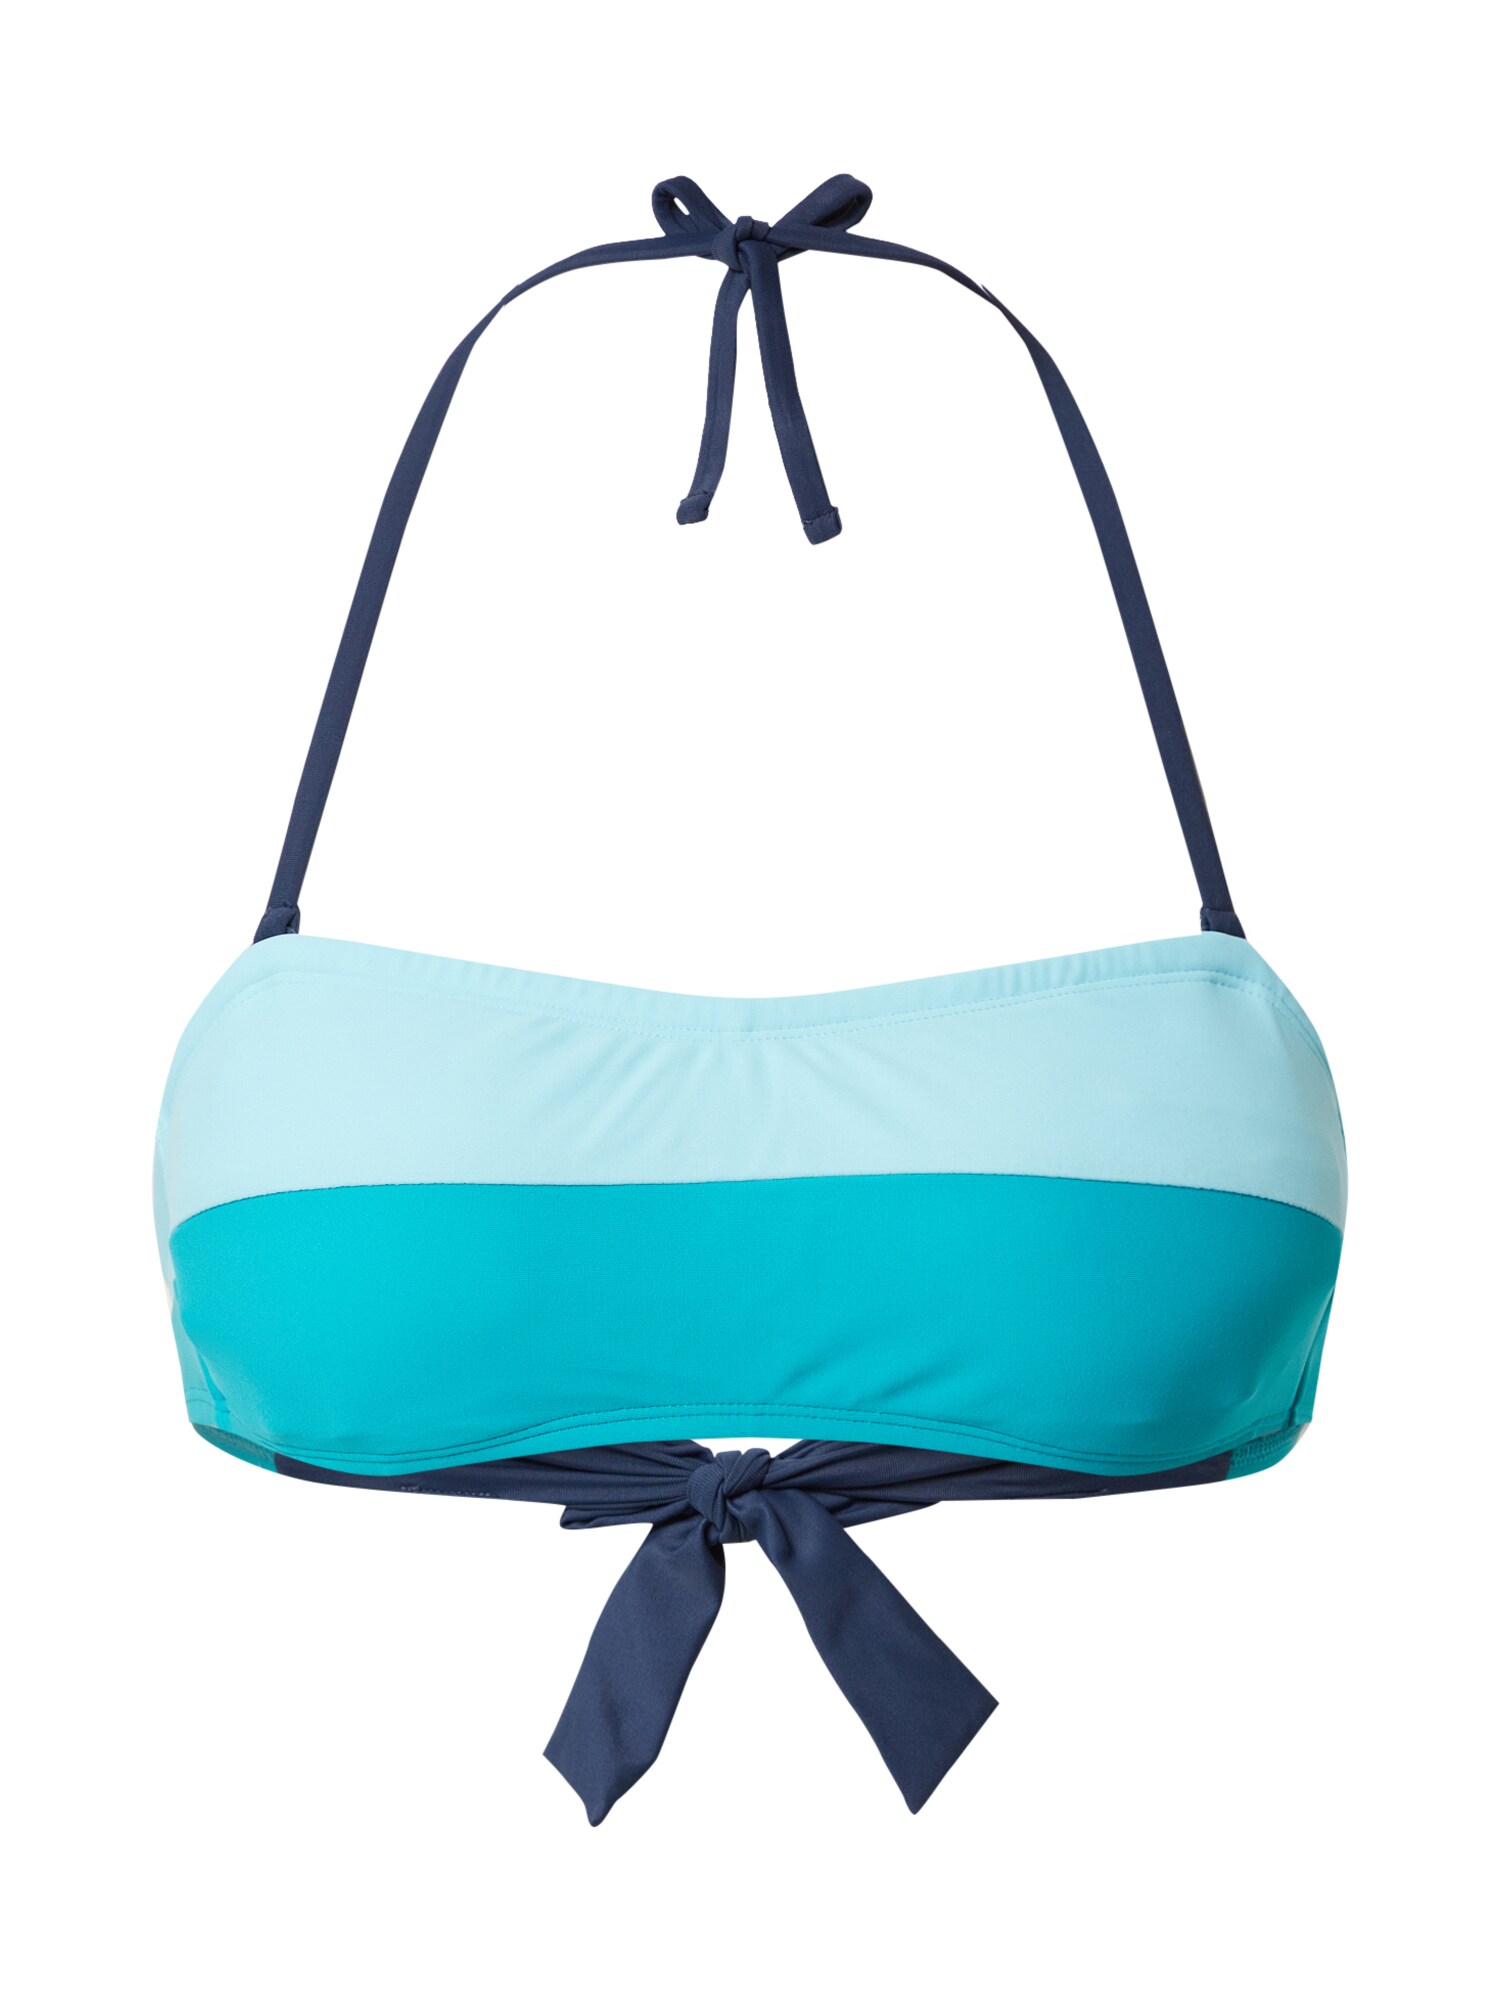 ESPRIT Bikinio viršutinė dalis 'Ross Beach'  tamsiai mėlyna / turkio spalva / šviesiai mėlyna